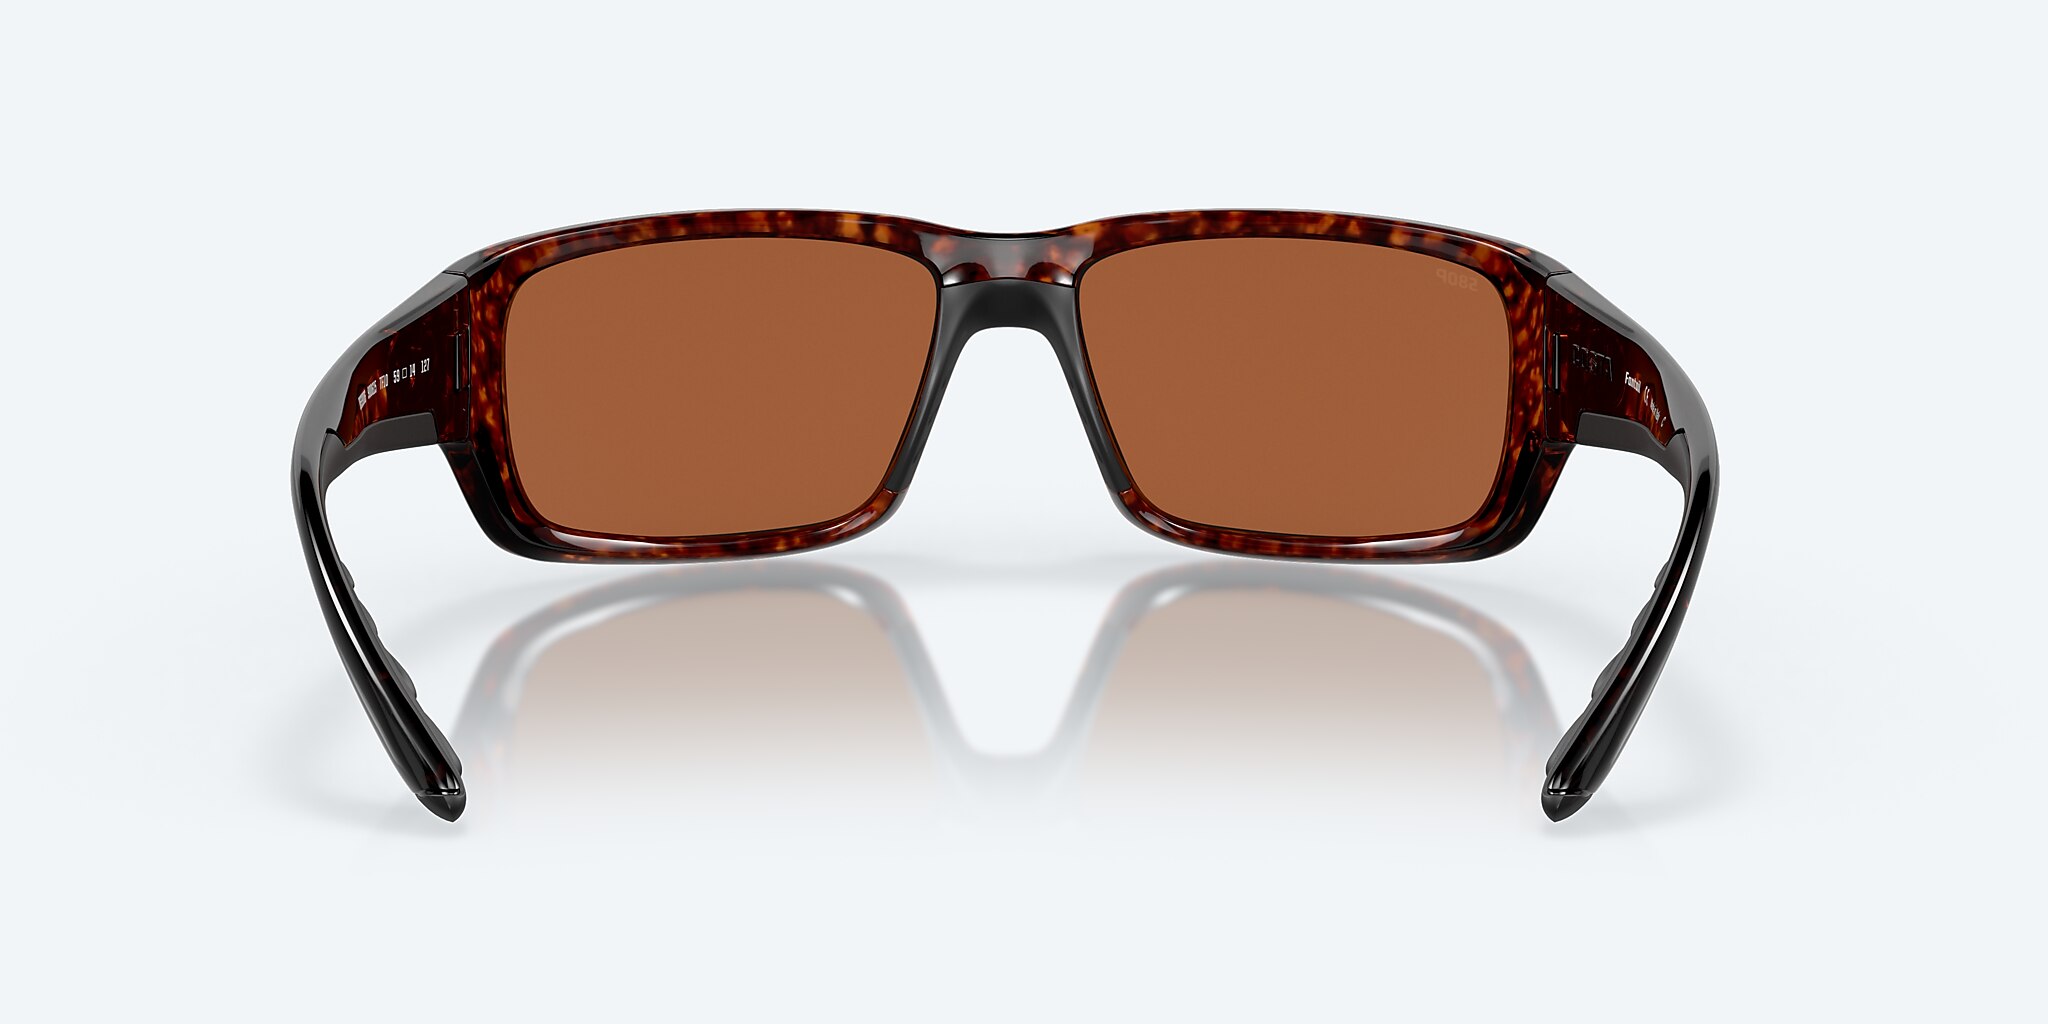 Del Mar® Mirror Costa Fantail Sunglasses Polarized Green | in